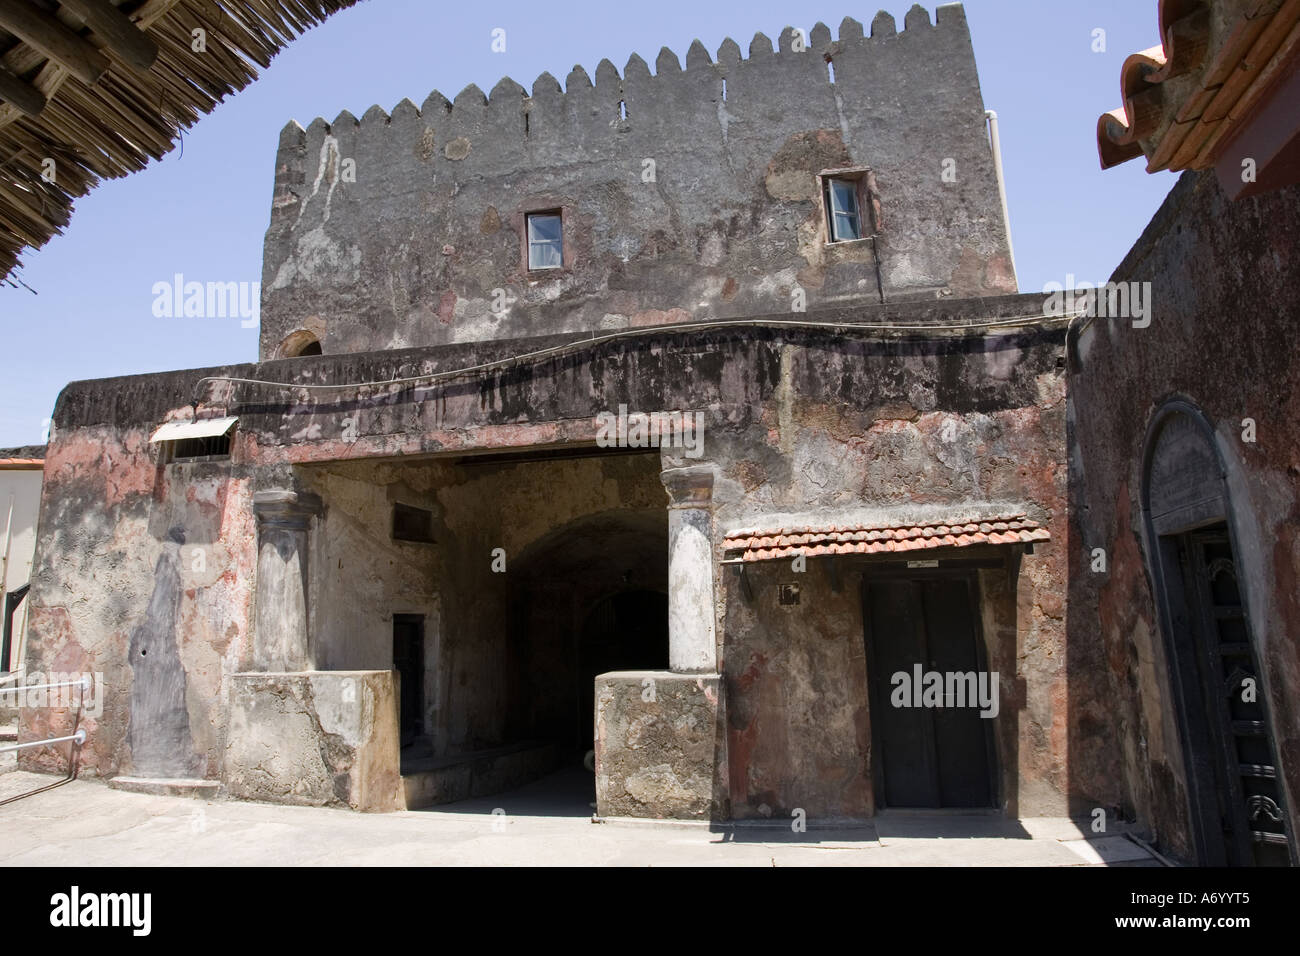 Sortie à l'ancienne garnison de Fort Jésus maintenant un musée à Mombasa Kenya Afrique de l'Est Banque D'Images